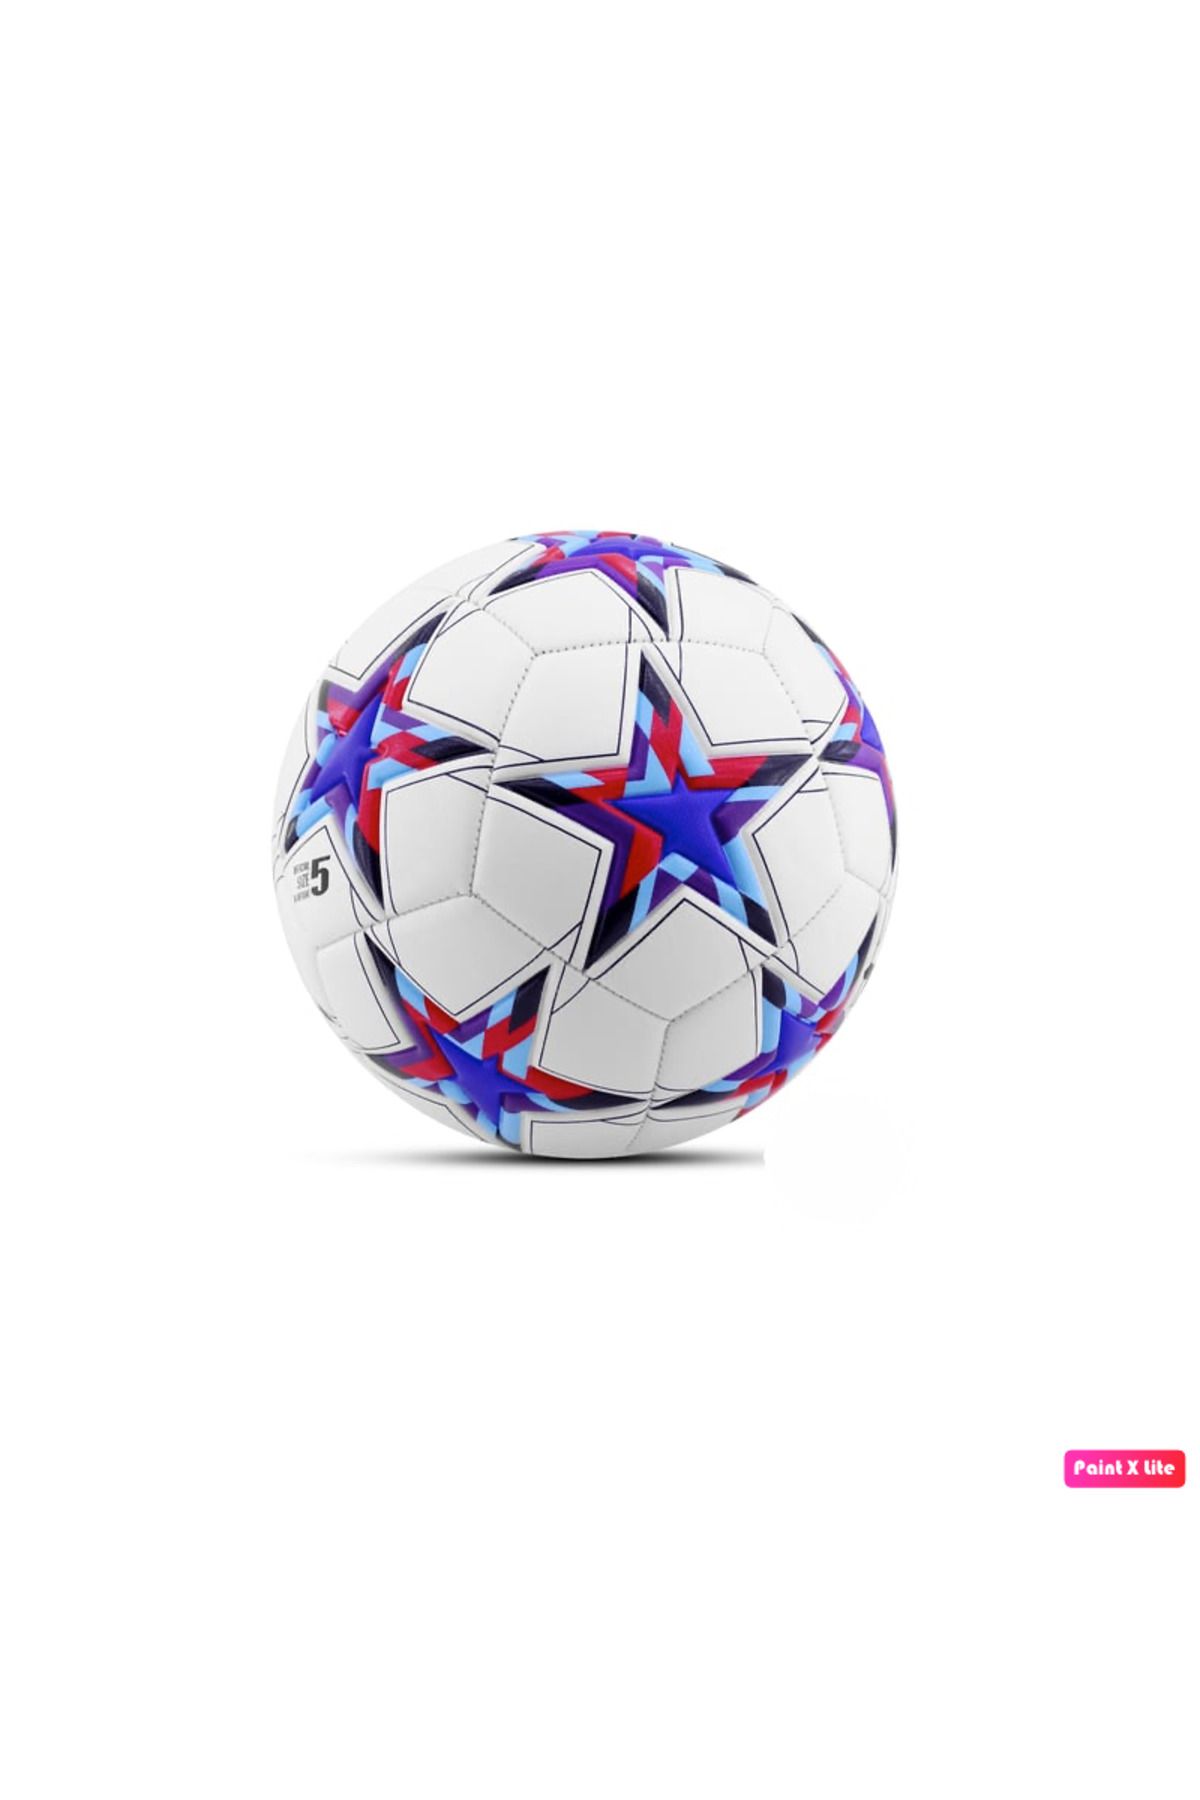 Avessa FT-800 Futbol Topu 4 Astarlı Sert Zemin Halı Saha Topu Maç Topu 420 gr